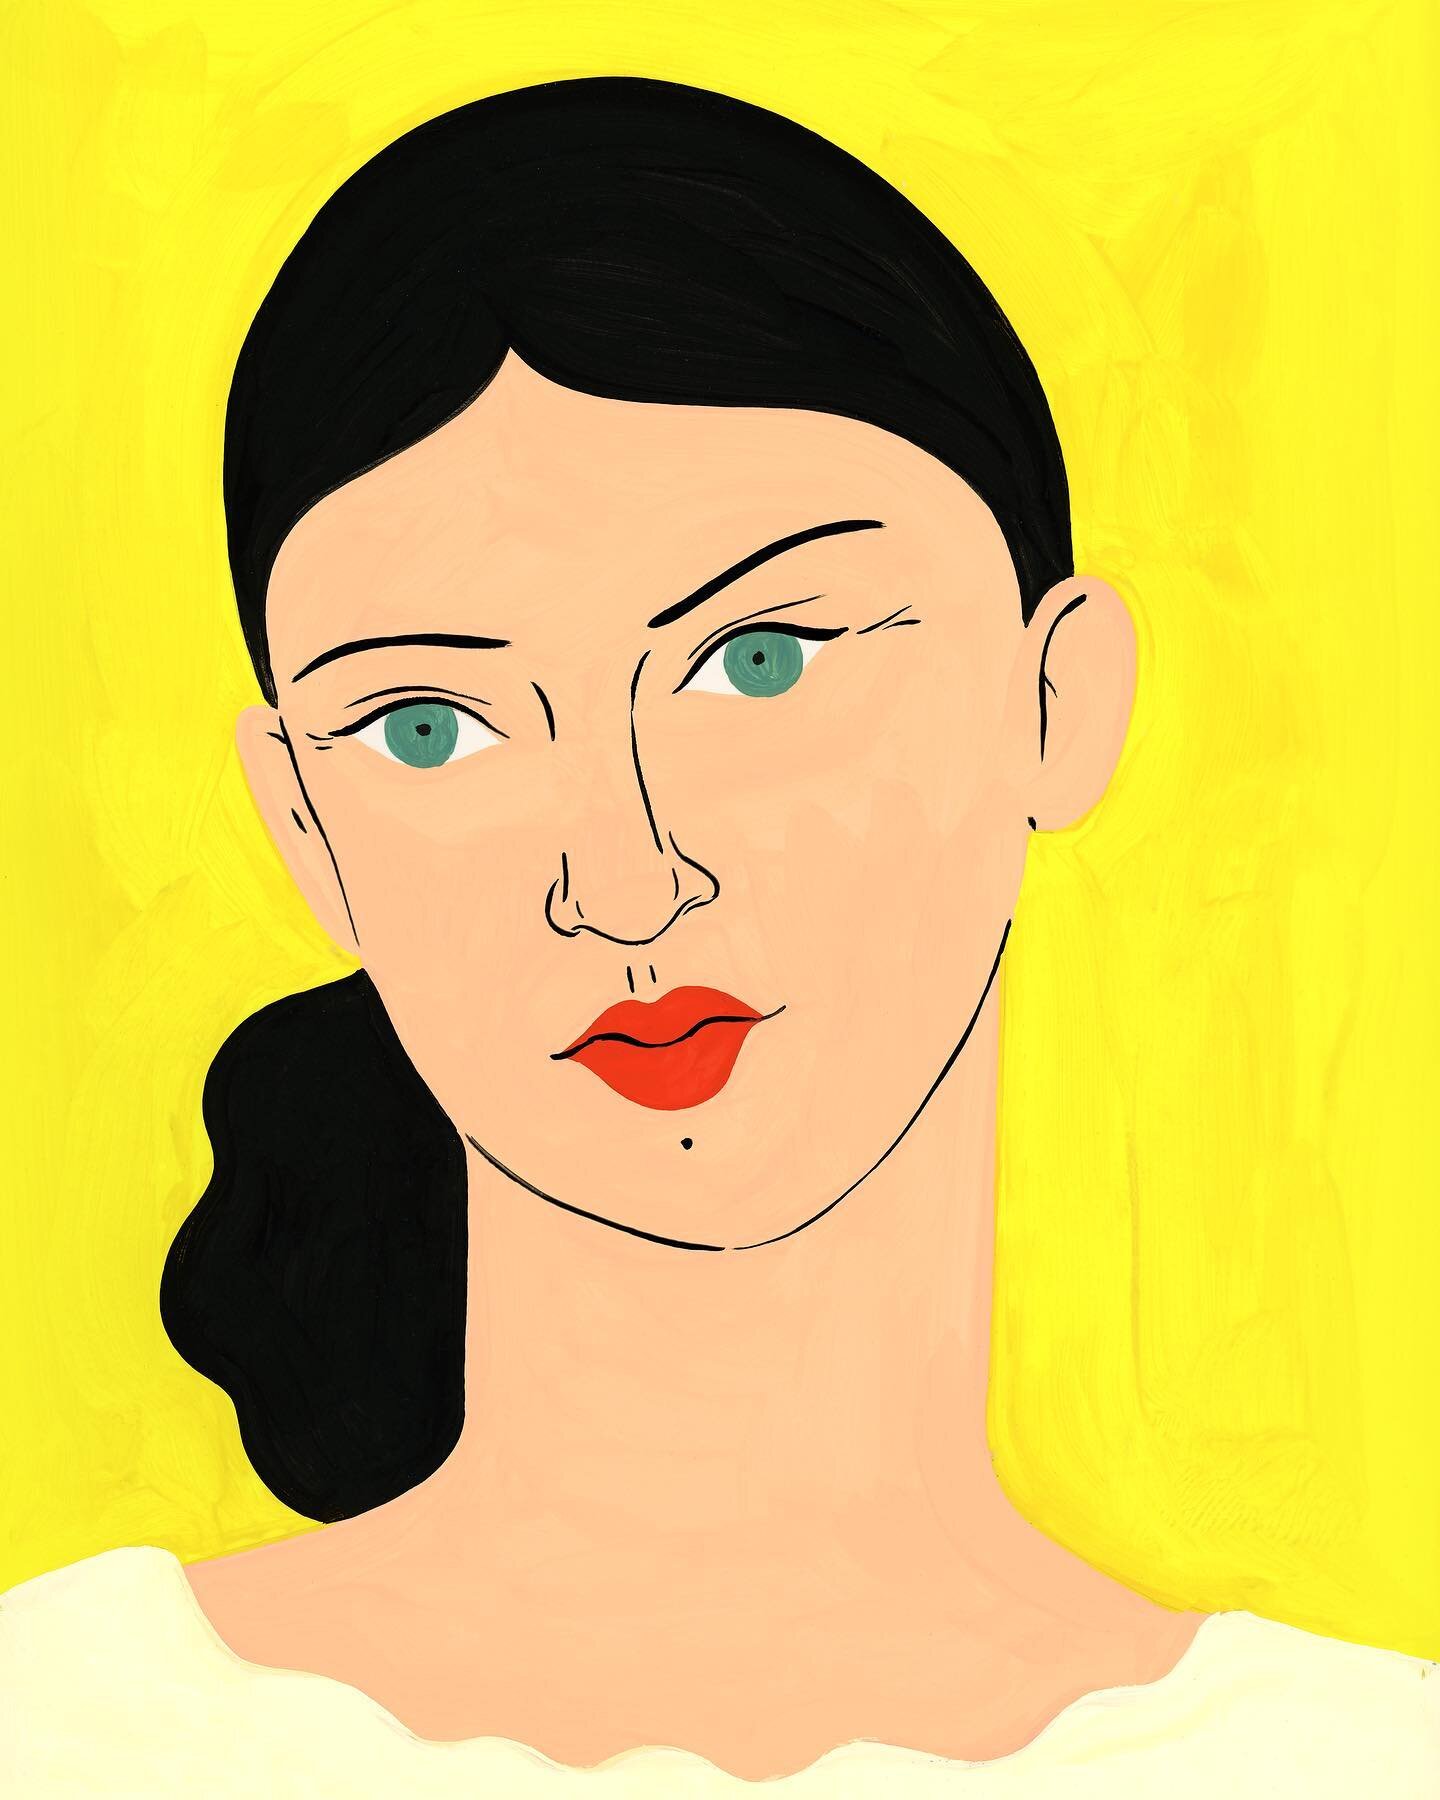 Portrait sur fond jaune, acryla gouache sur papier 
#gouachepainting #illustration #portrait #acrylagouache